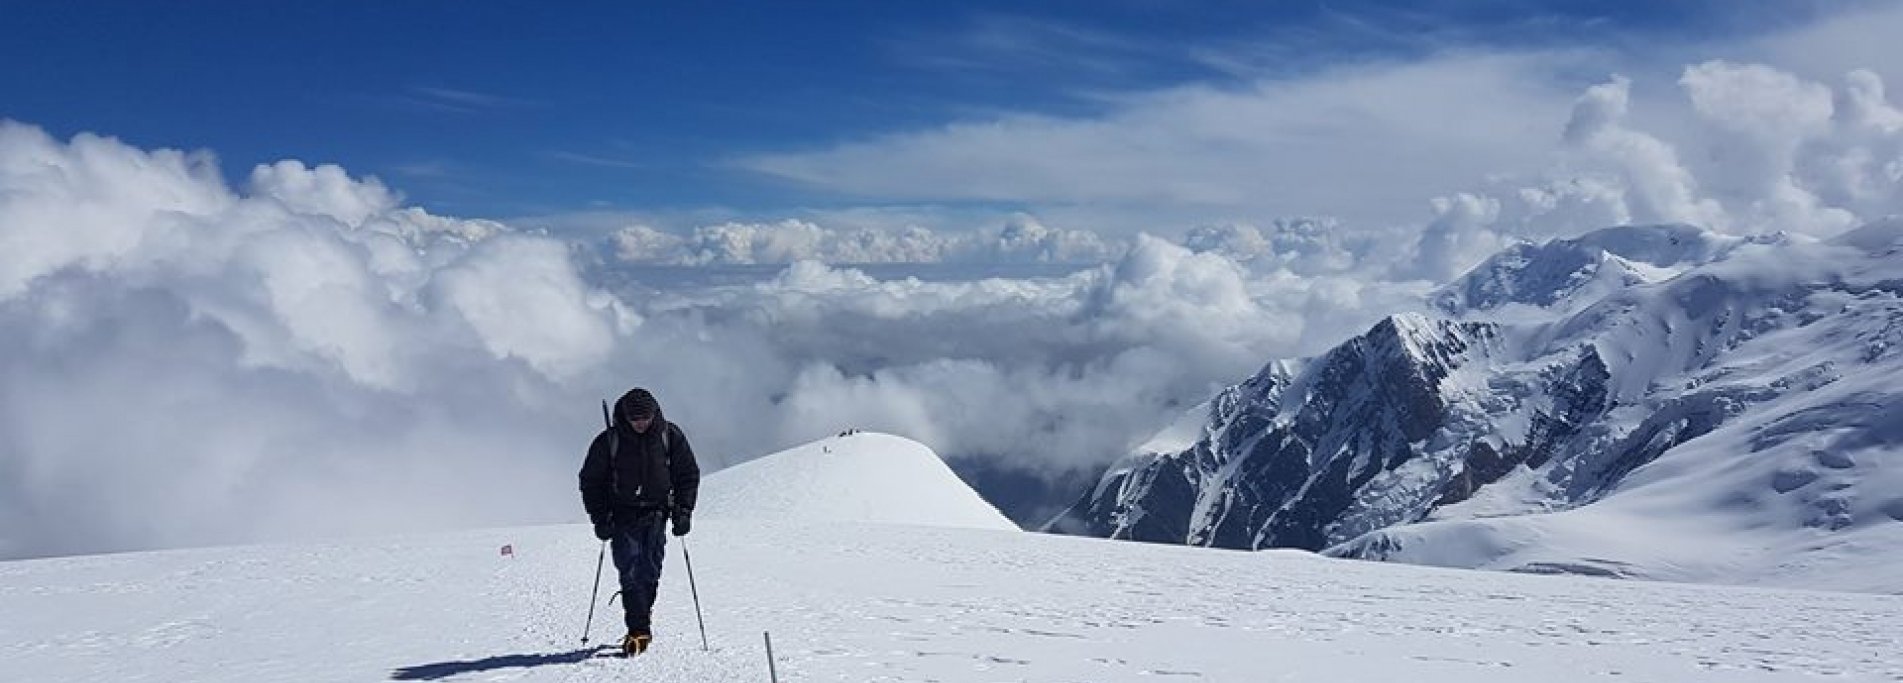 Razdelnaya summit 6148 m - Ascent to Razdelnaya 2021